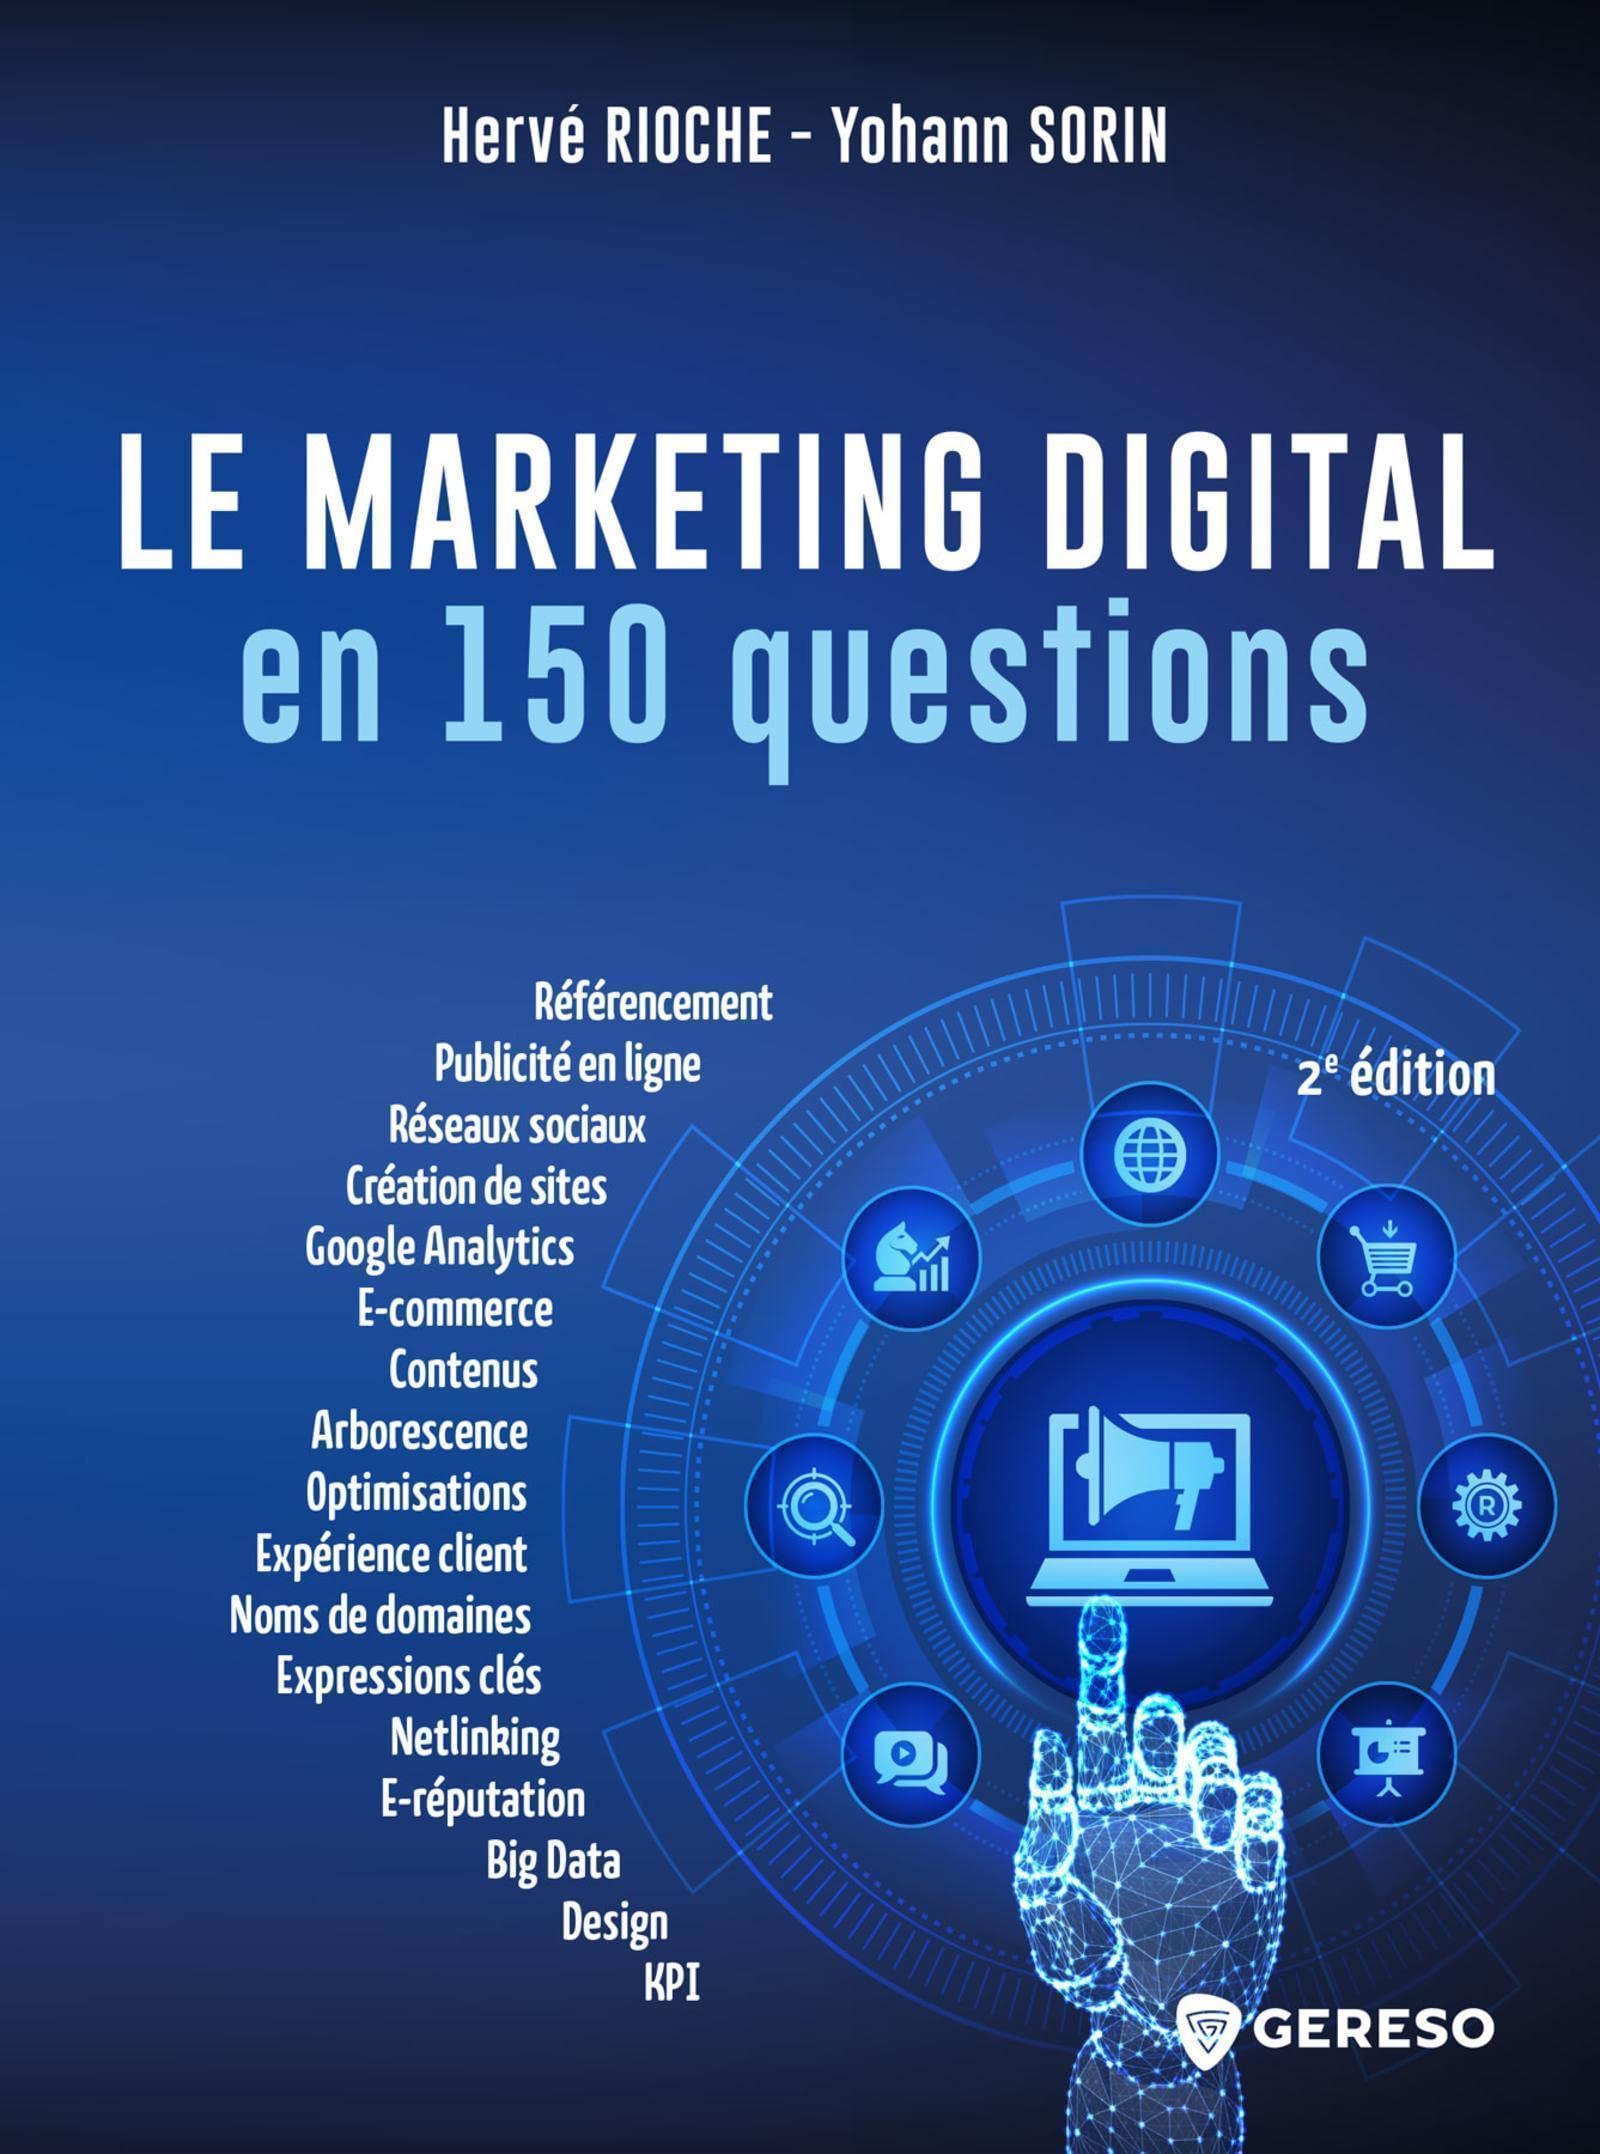 Le marketing digital en 150 questions: DEVELOPPER SA VISIBILITE, SA PERFORMANCE ET SA NOTORIETE SUR LE WEB